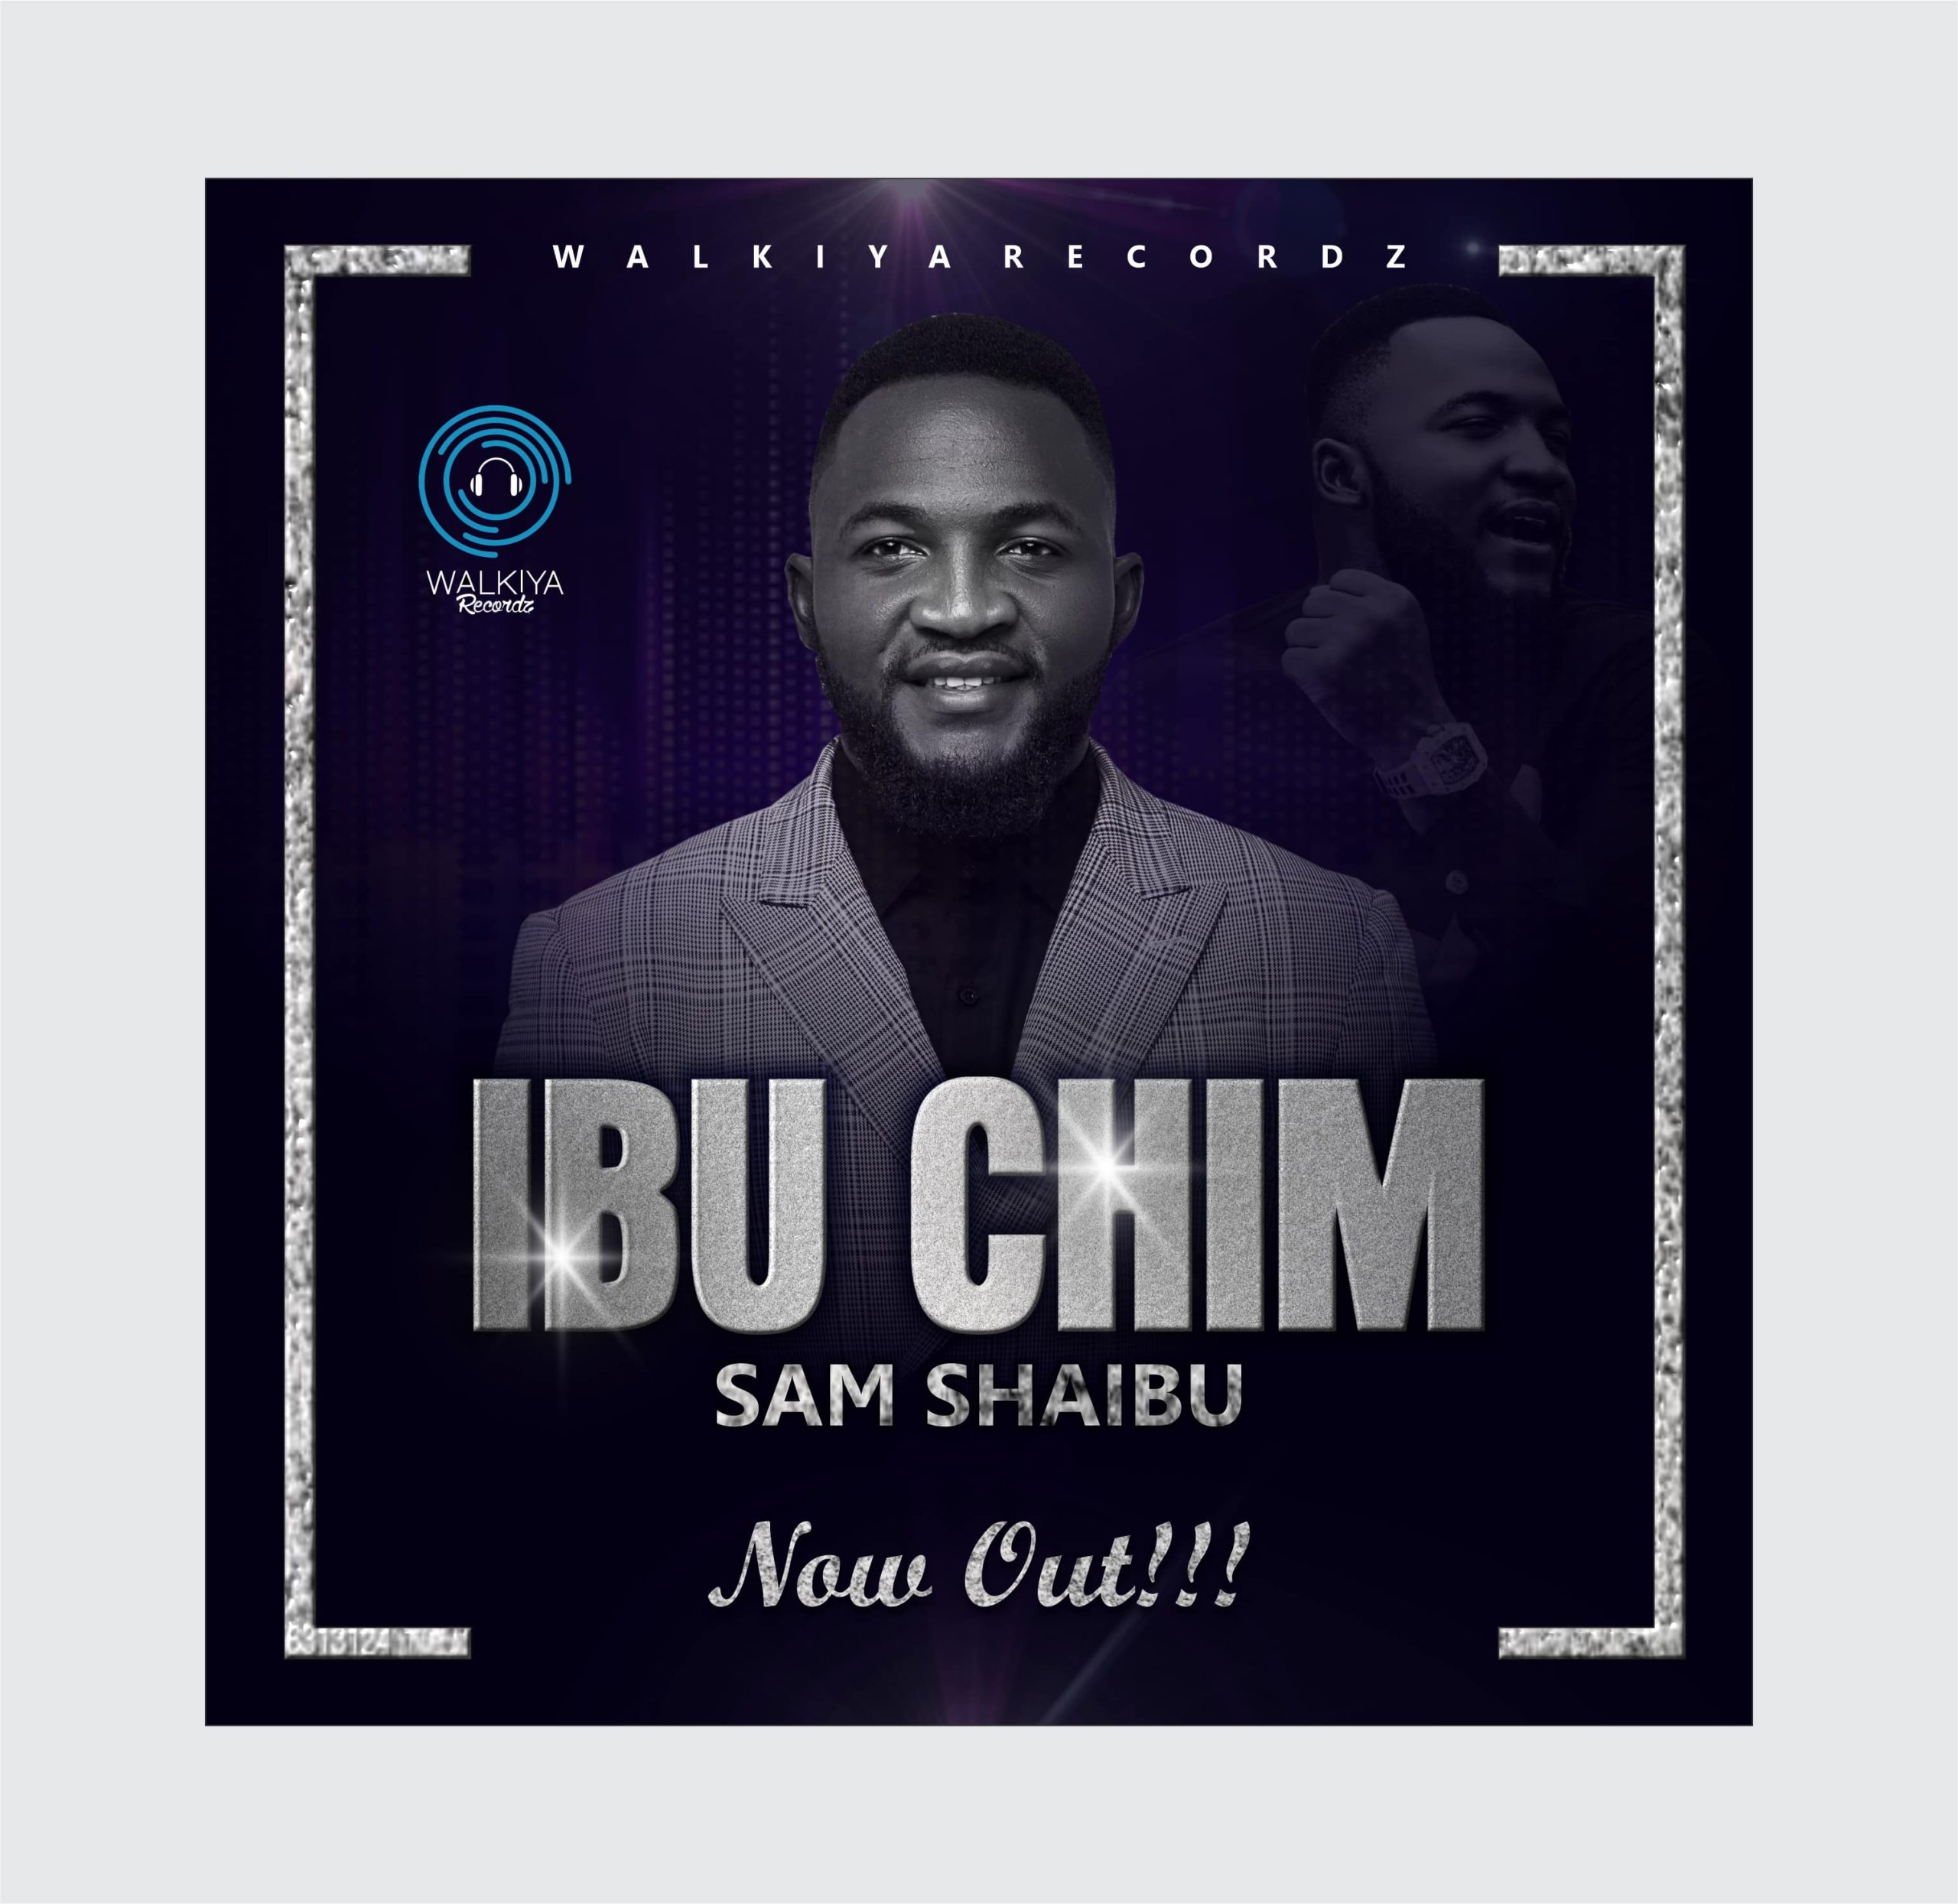 Download Mp3: Sam Shaibu - Ibu Chim